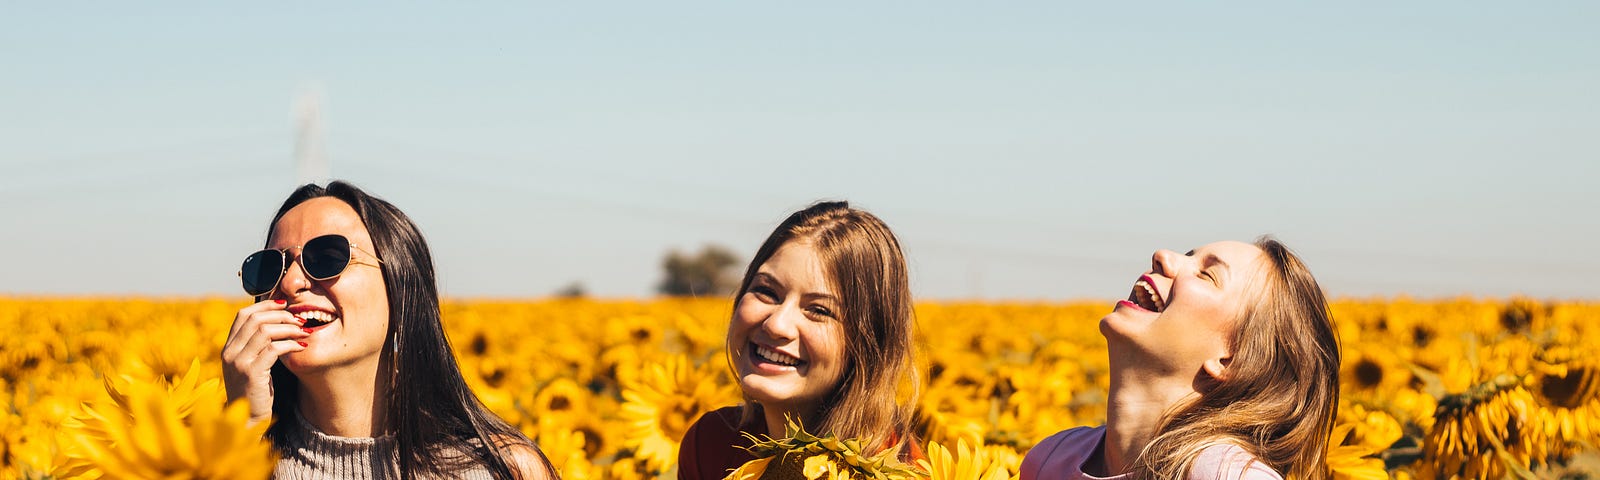 Three women in a sunflower field